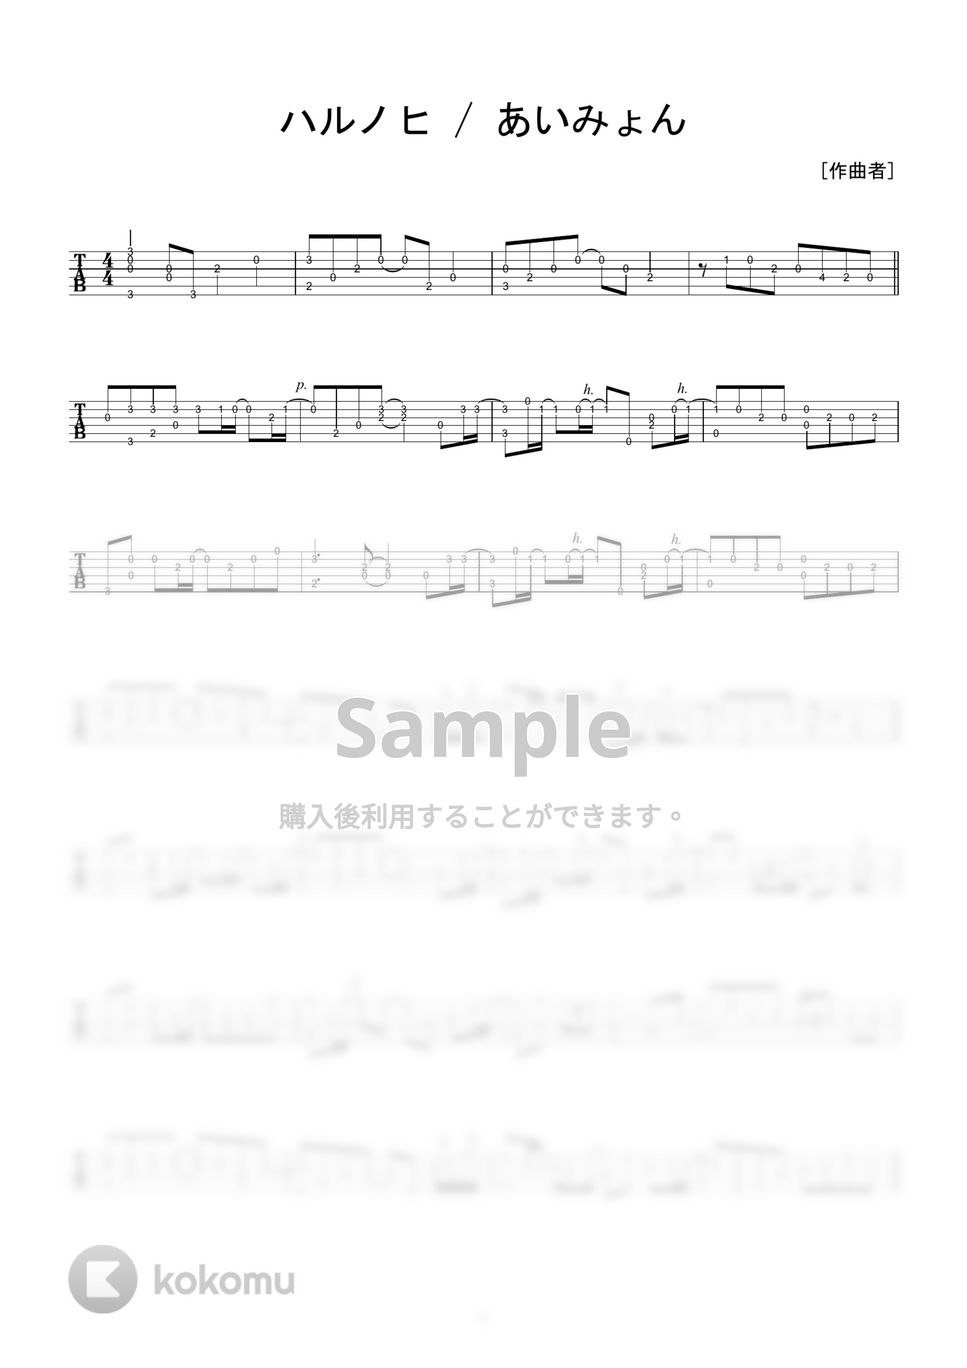 あいみょん - ハルノヒ (ソロギター) by 伴奏屋TAB譜